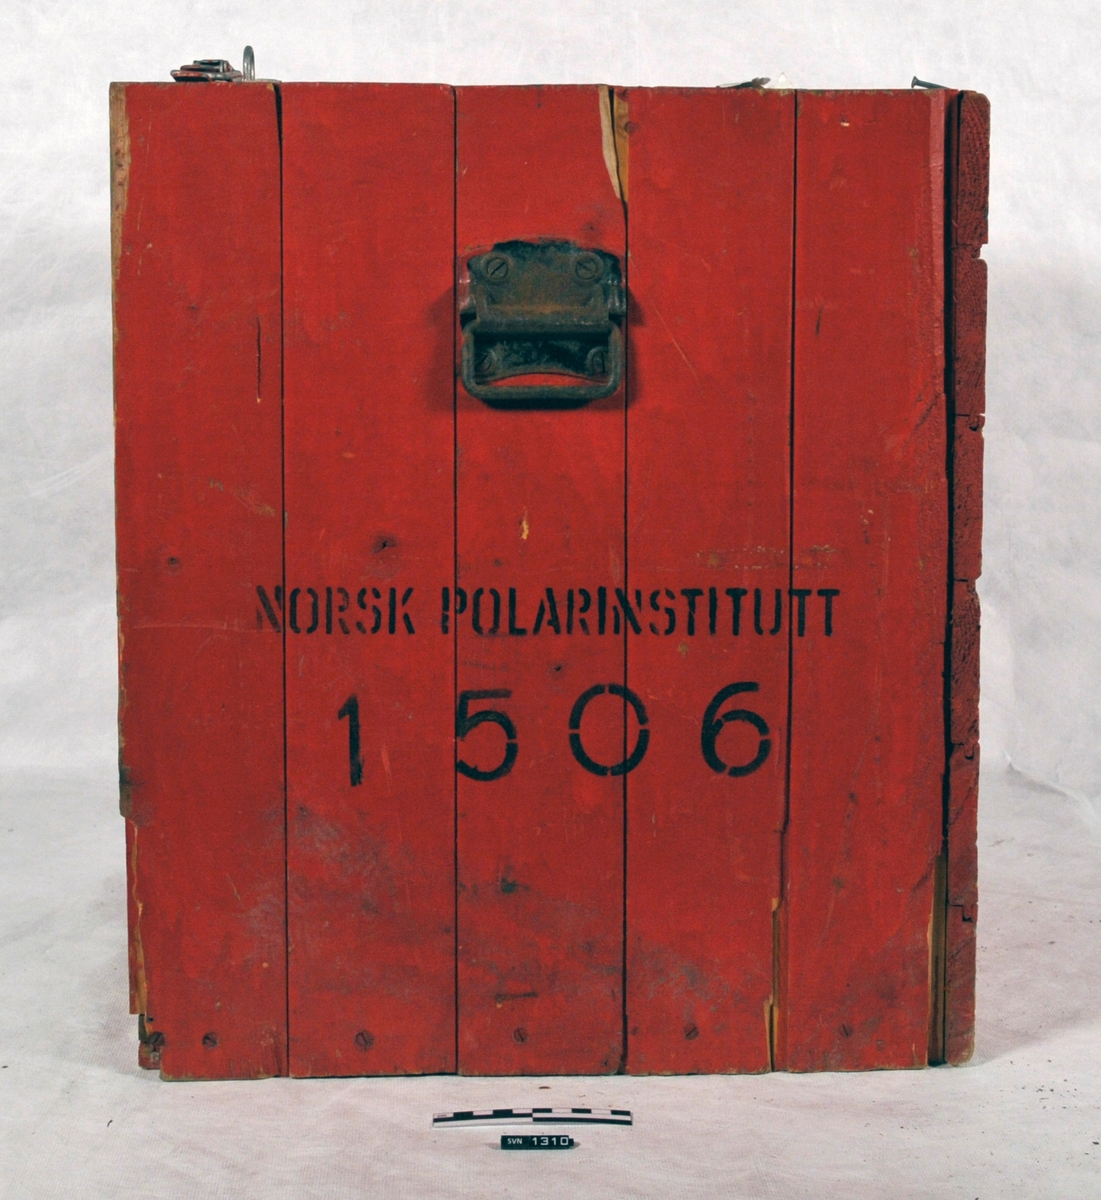 Rød kasse med sort skrift.
Kassen (A) inneholder et aparat (B) med trykkmåler og slanger.
Aparatets funksjon er usikker.